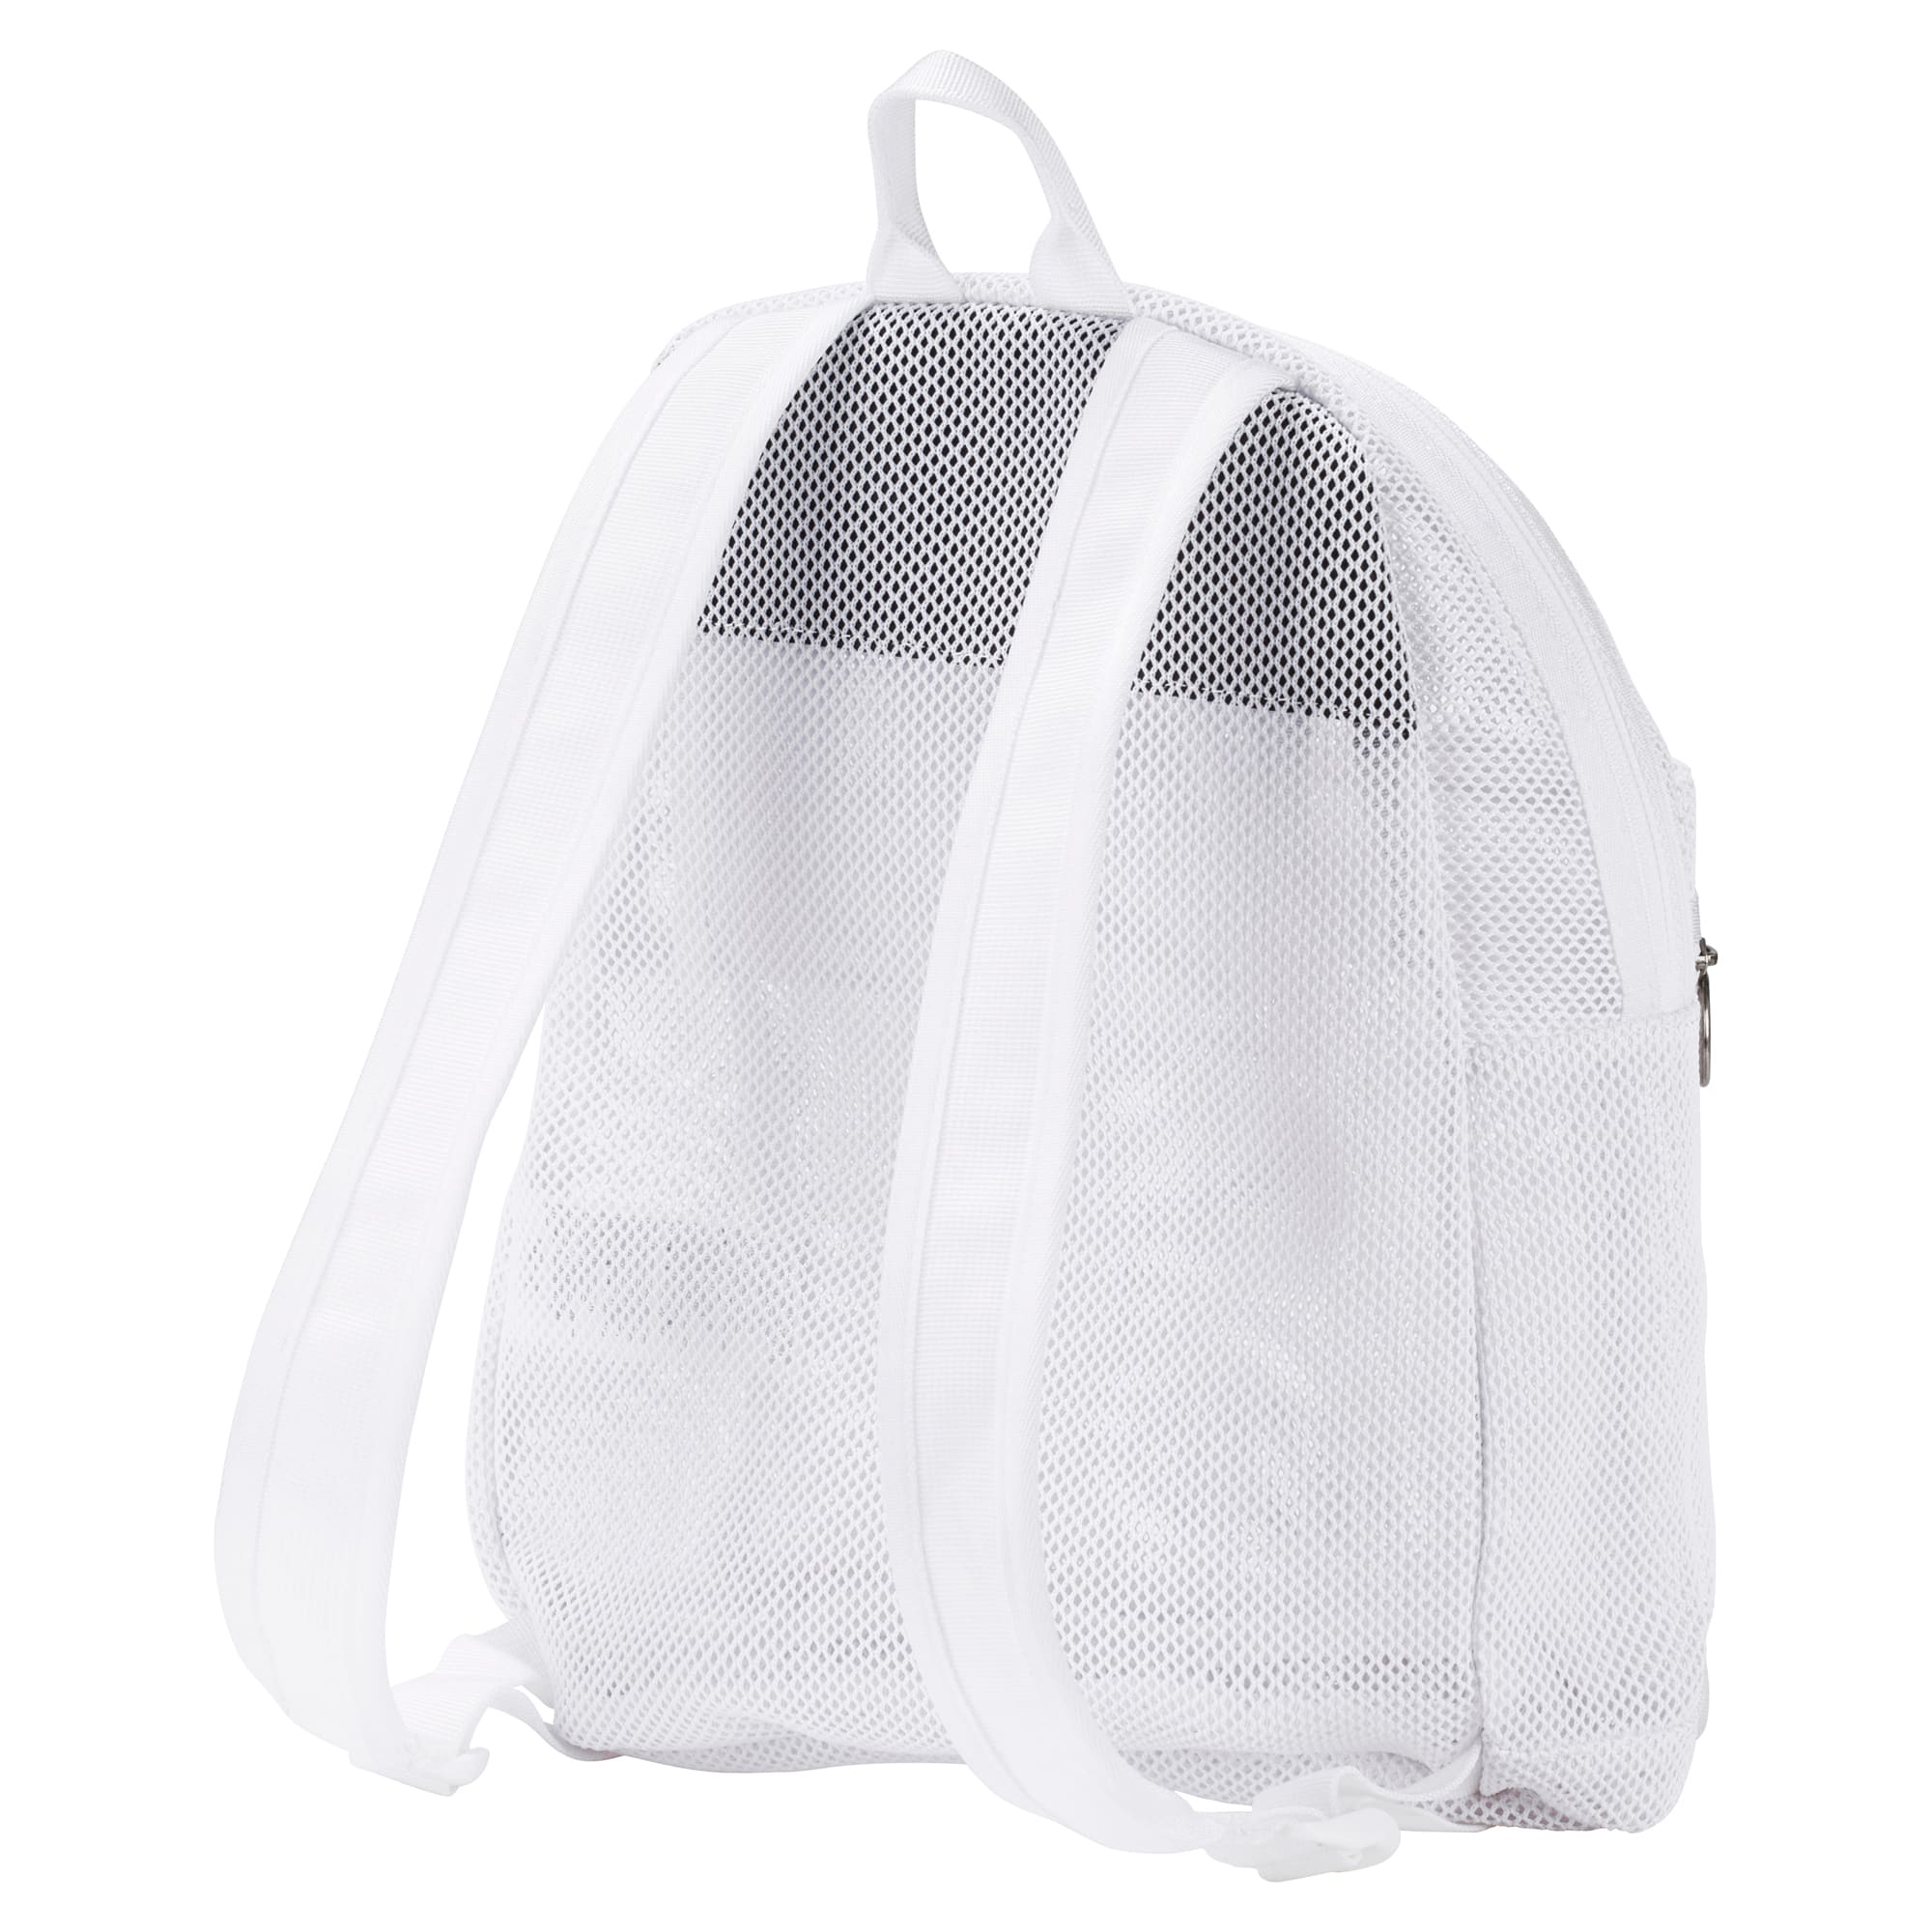 puma originals mesh backpack